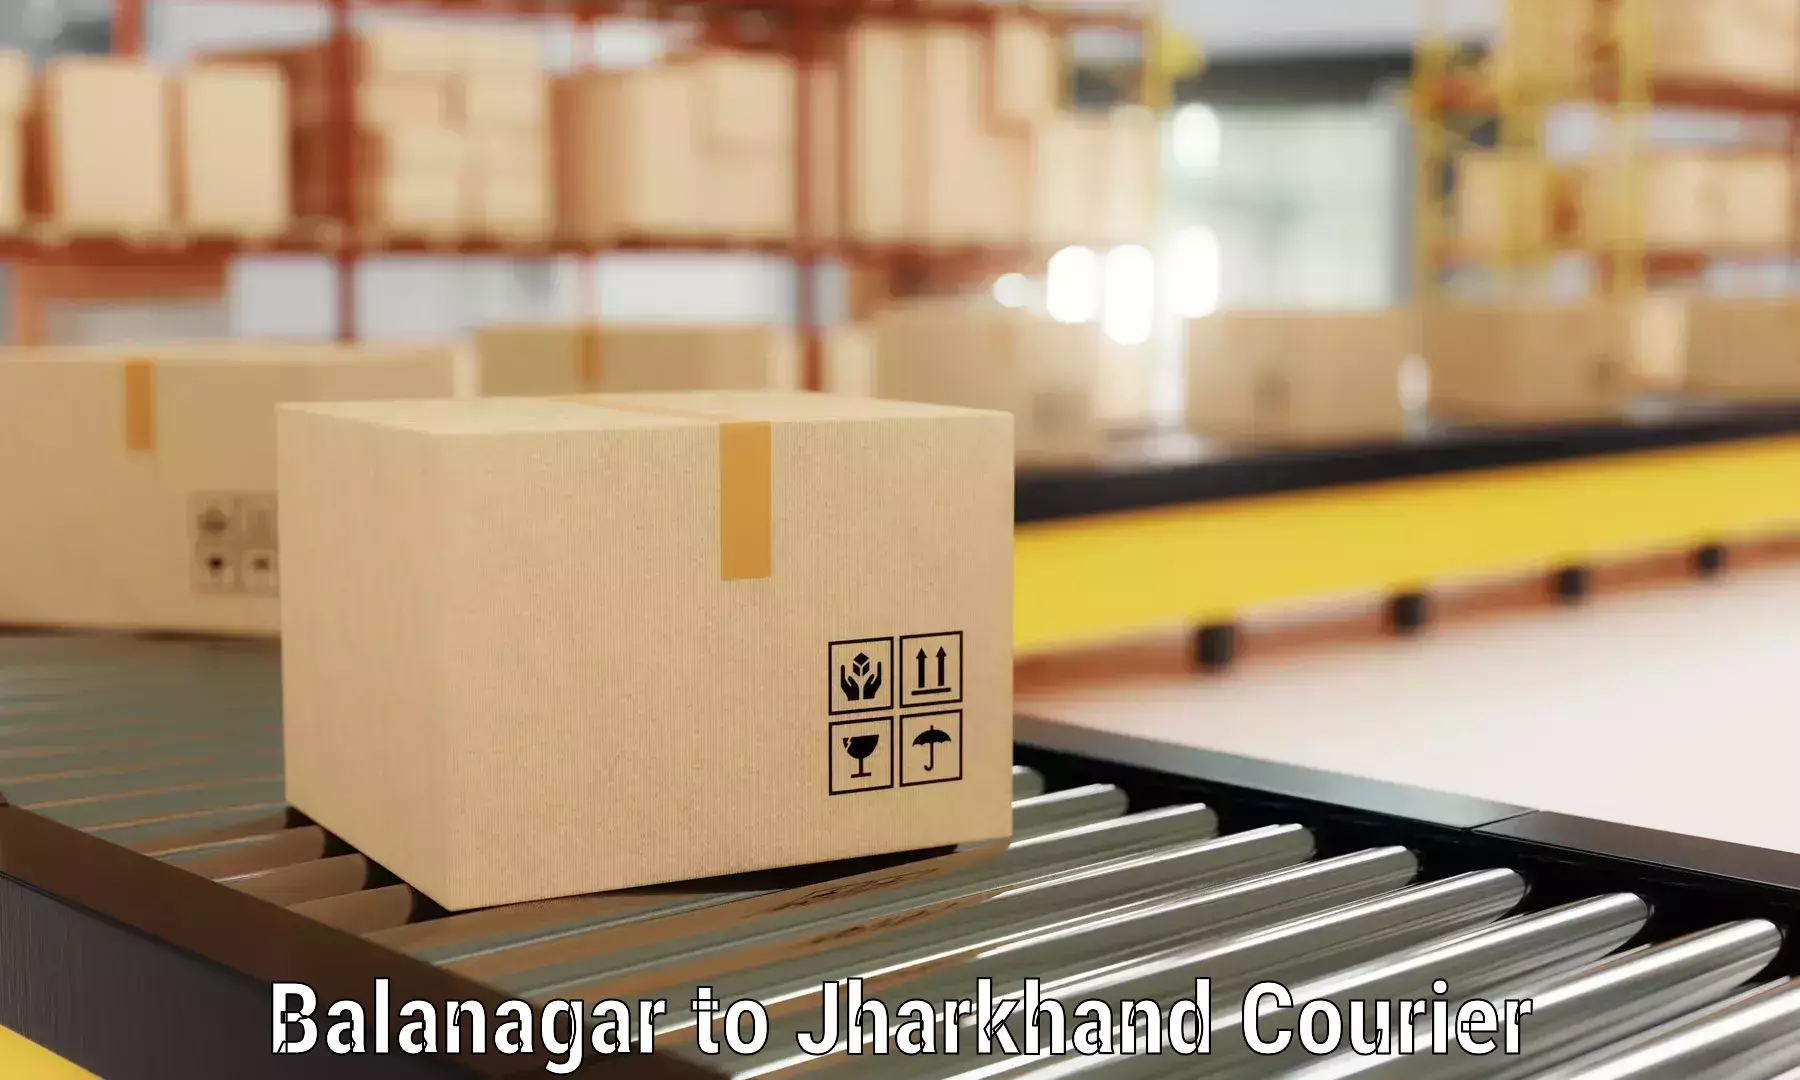 Professional packing services Balanagar to Ranchi